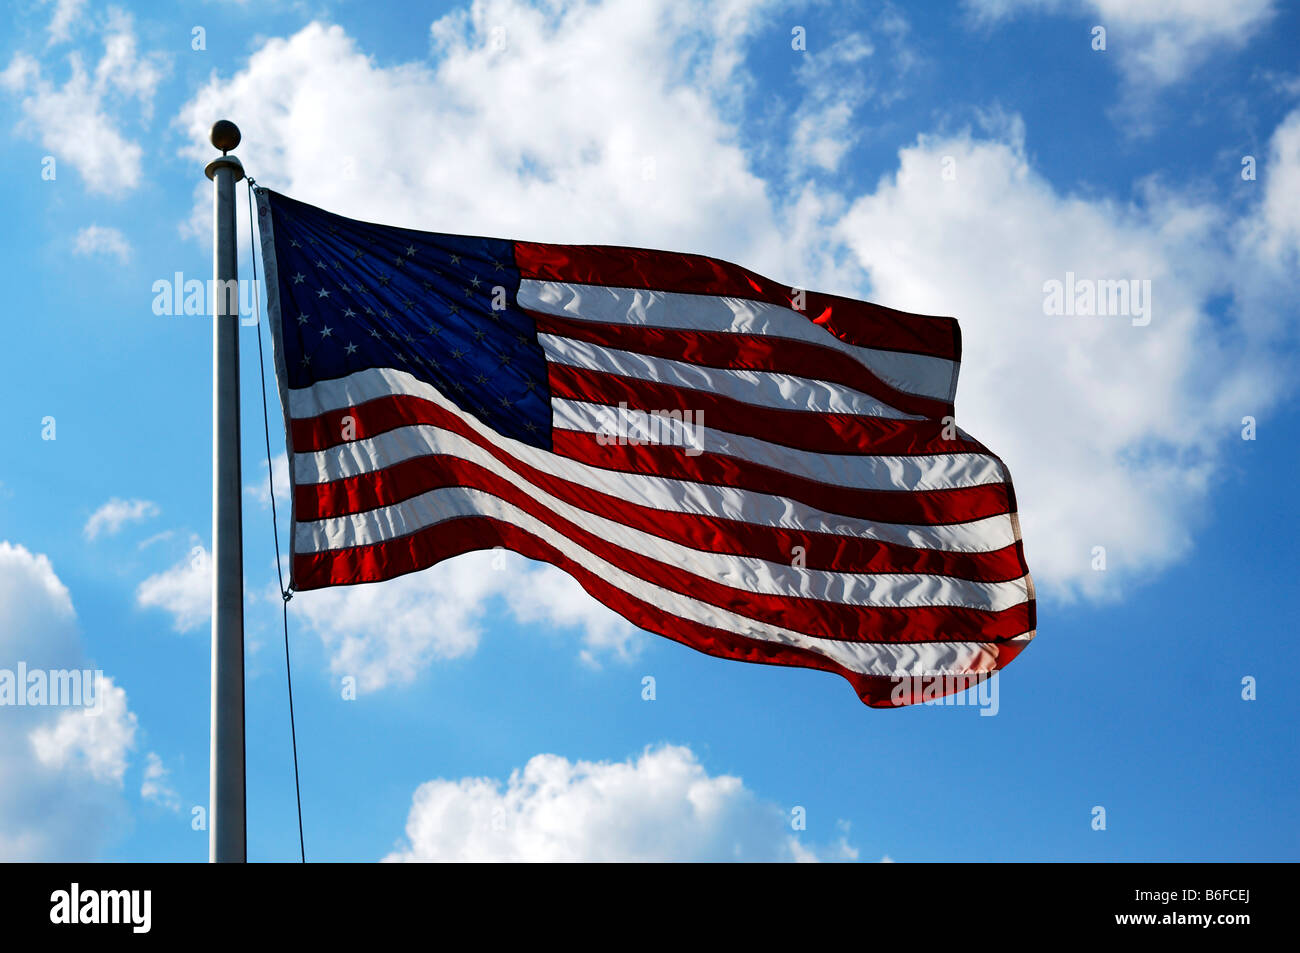 Noi bandiera contro una nuvola blu cielo, Blairstown, New Jersey, STATI UNITI D'AMERICA Foto Stock